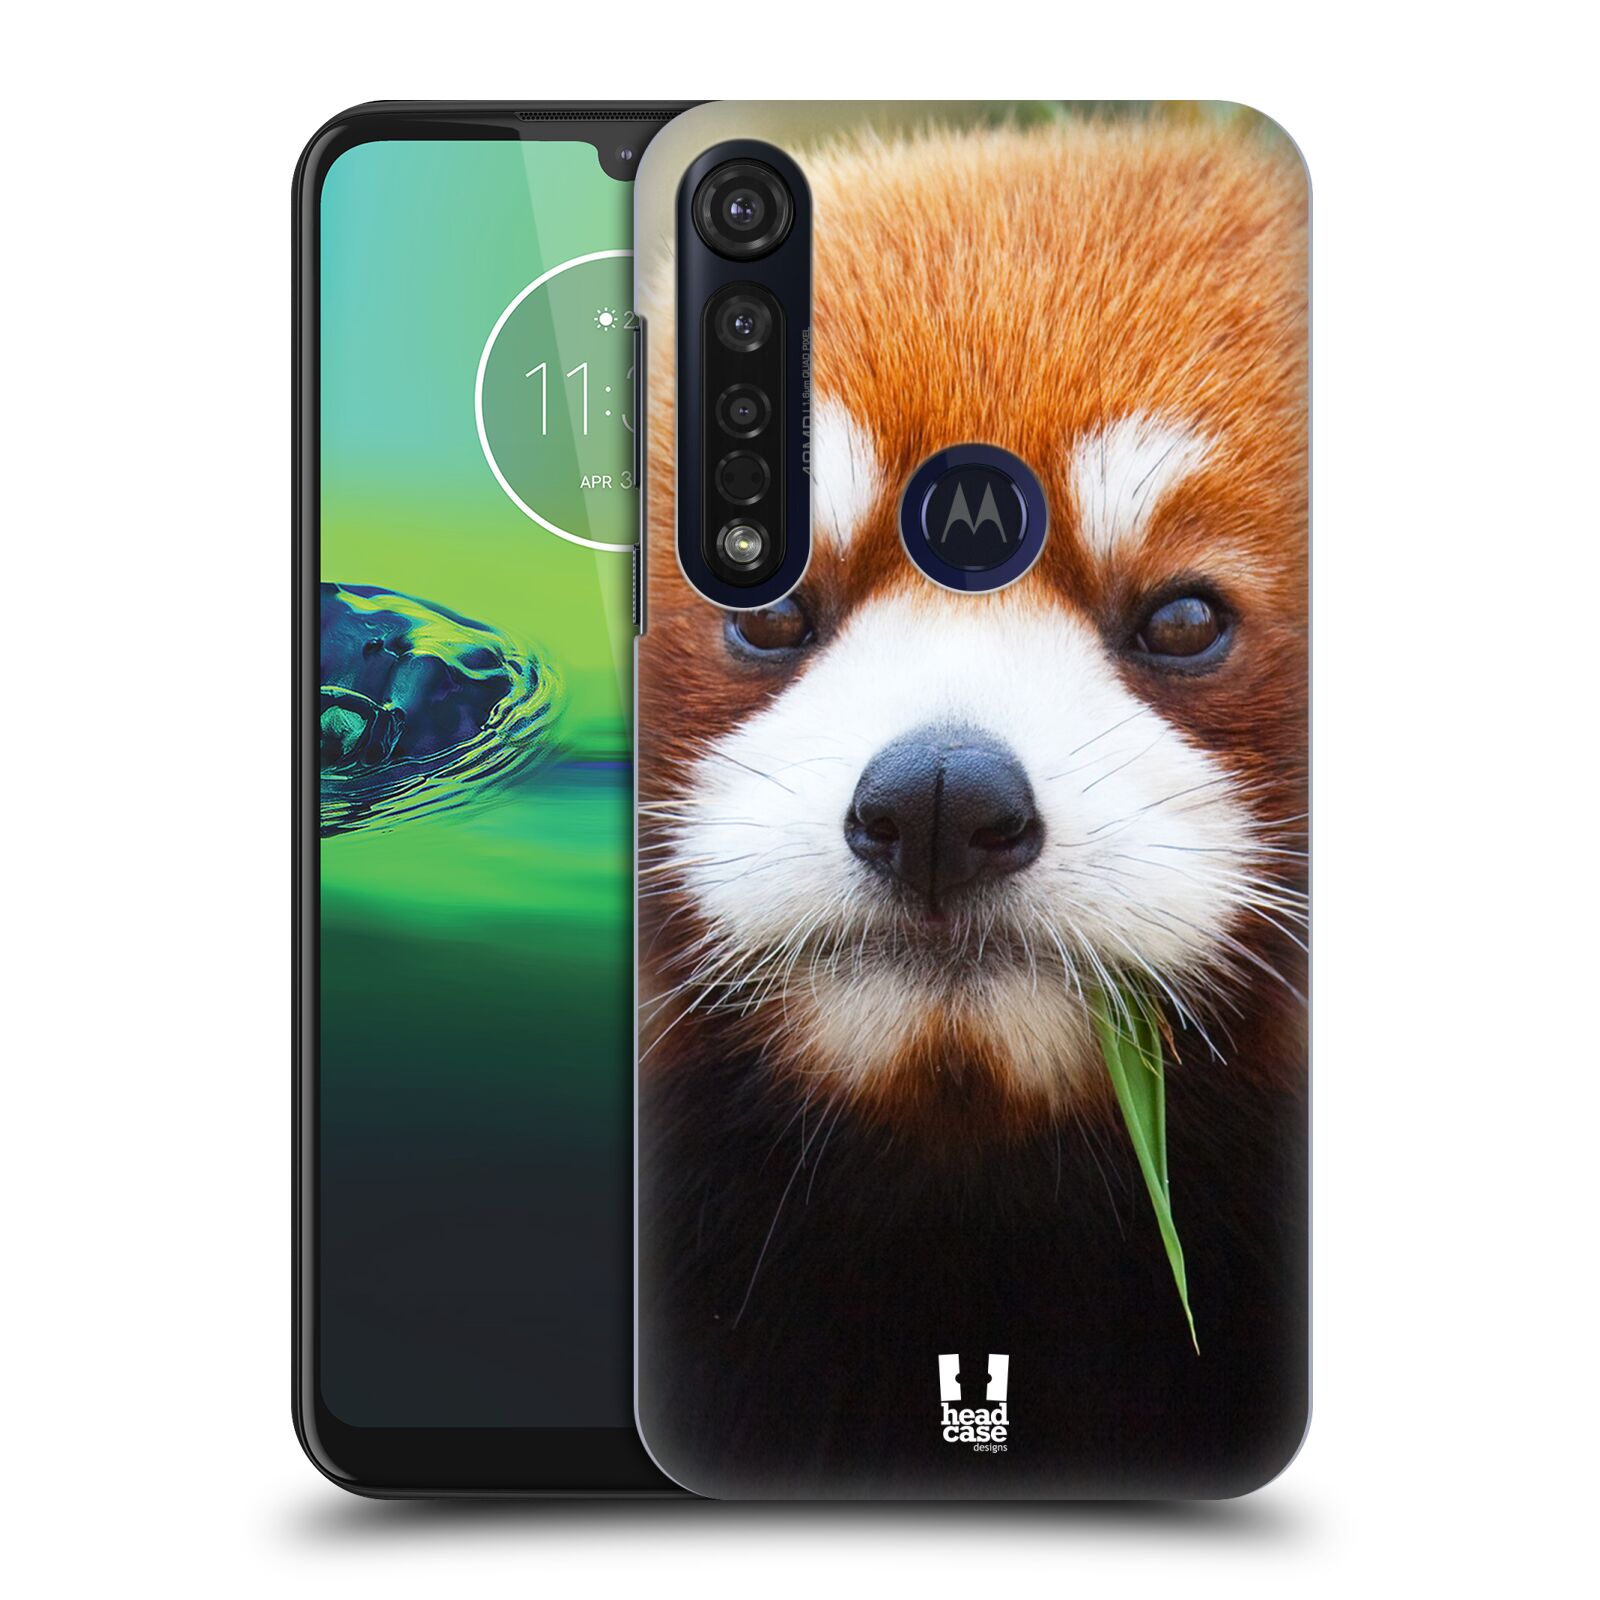 Pouzdro na mobil Motorola Moto G8 PLUS - HEAD CASE - vzor Divočina, Divoký život a zvířata foto PANDA HNĚDÁ